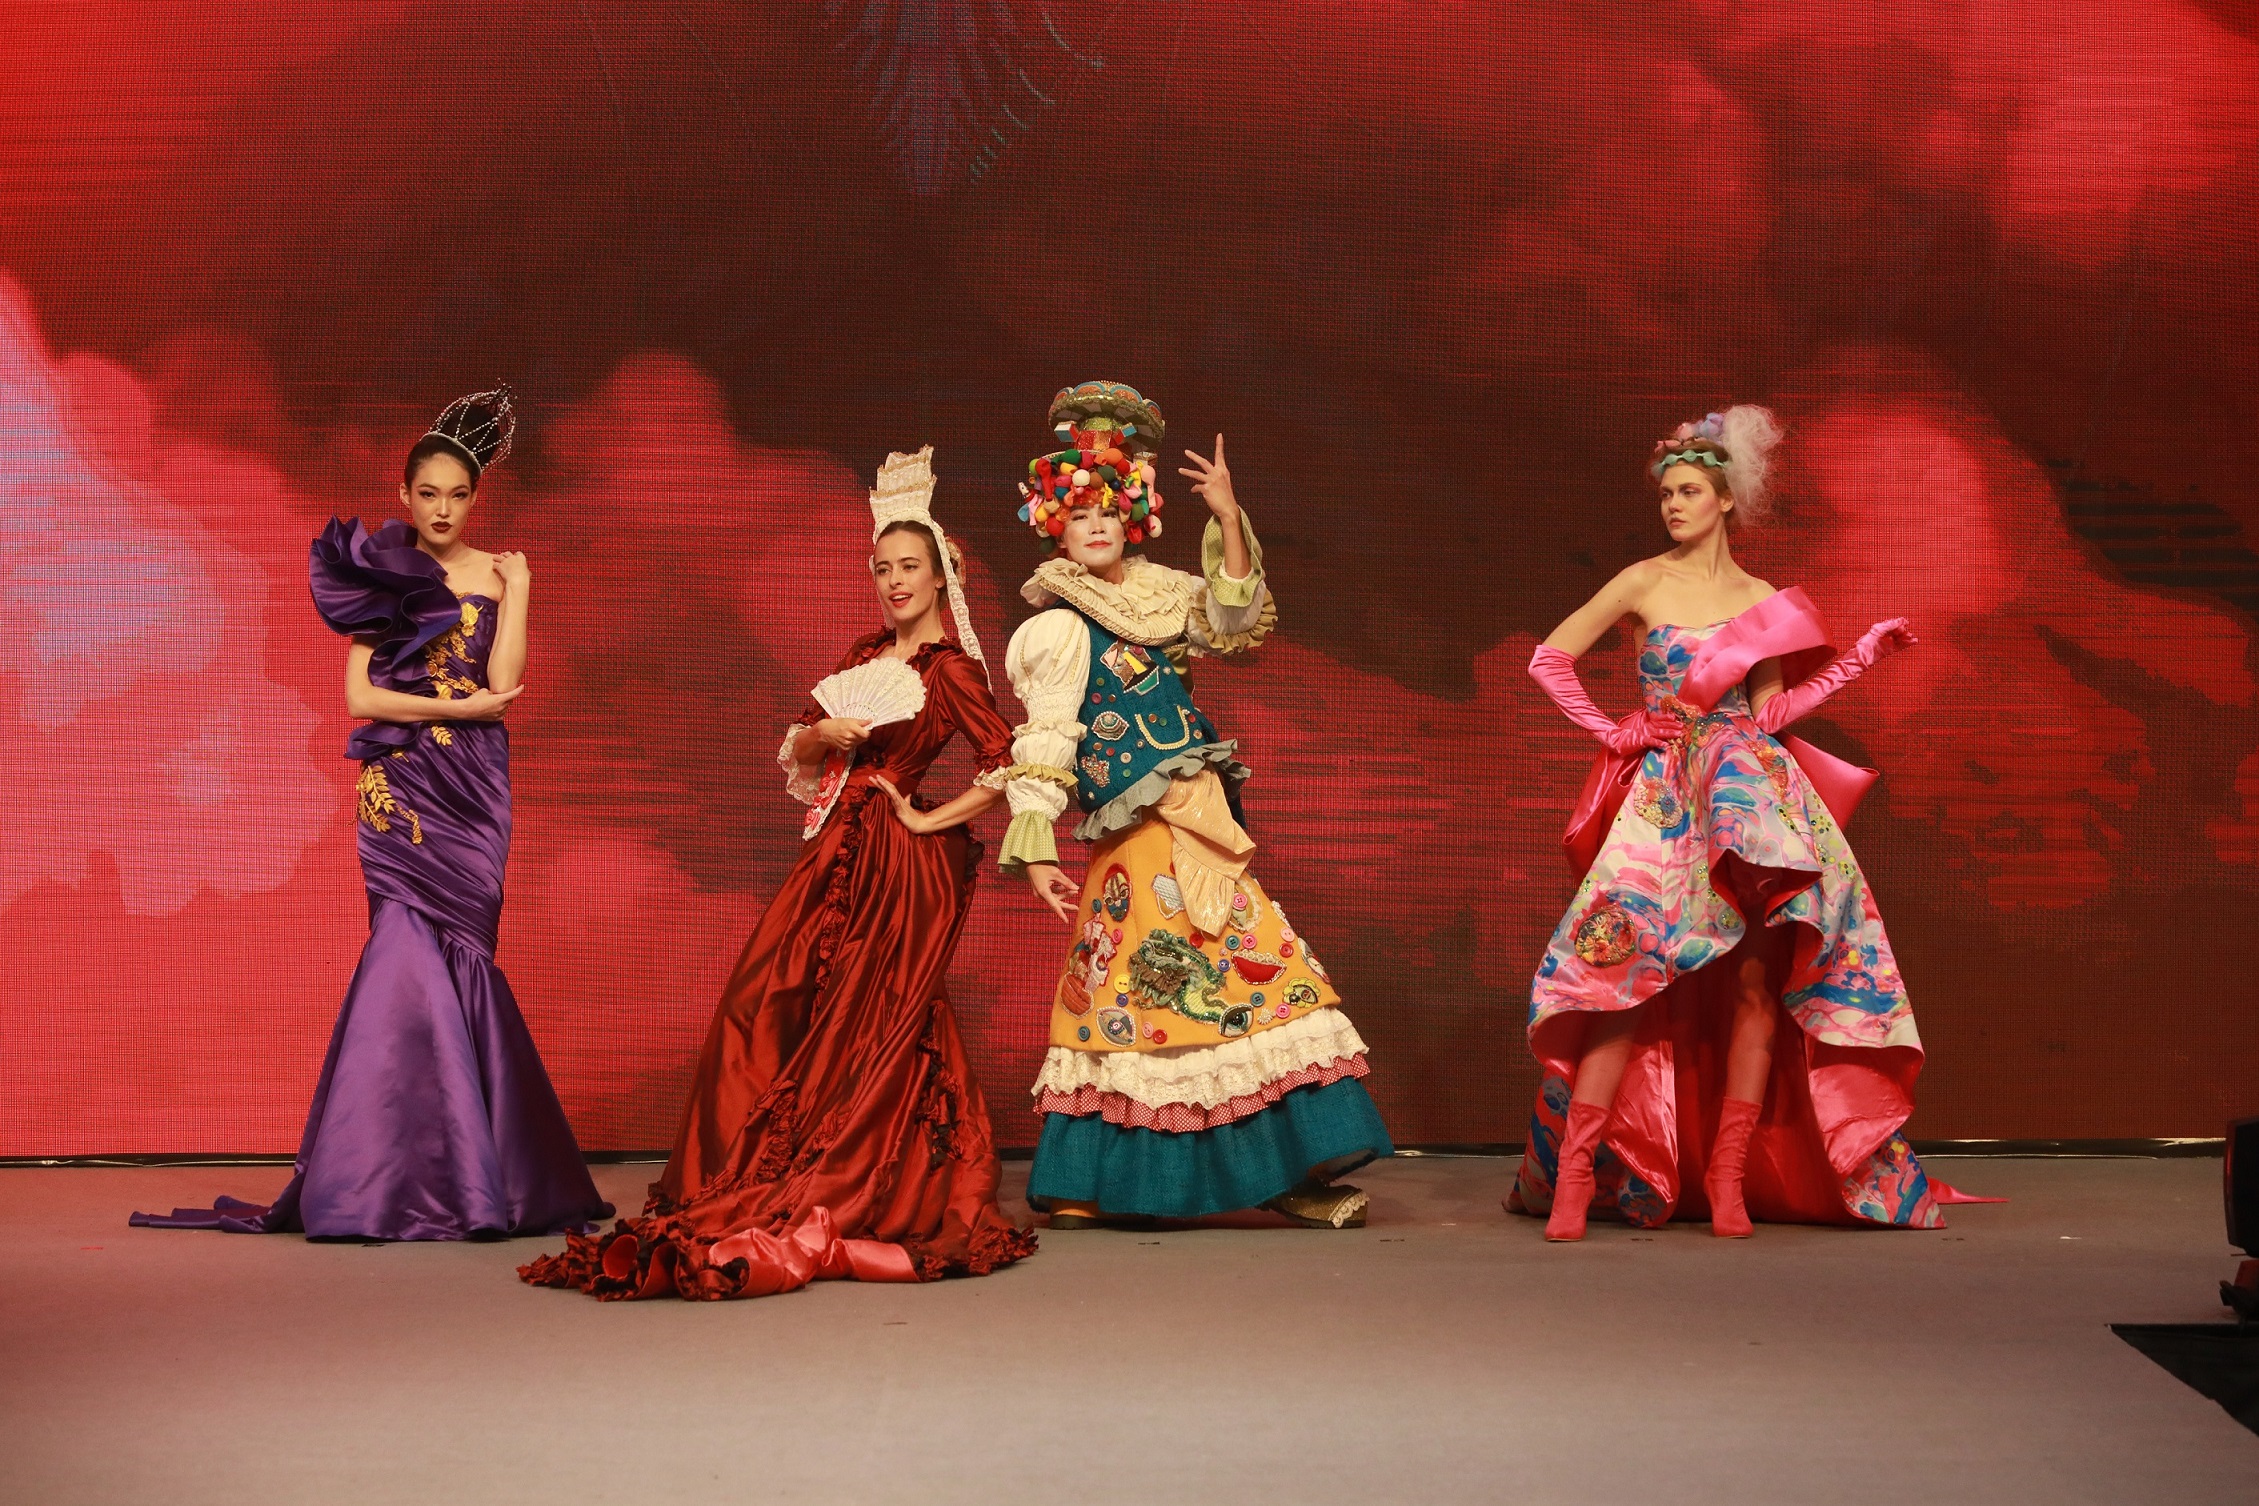 由HKDI舉辦的「霓裳星夢」時裝表演，精心編排的表演融合時裝、舞蹈和音樂元素，舞者和模特兒將為各位觀眾帶來視覺的全新體驗